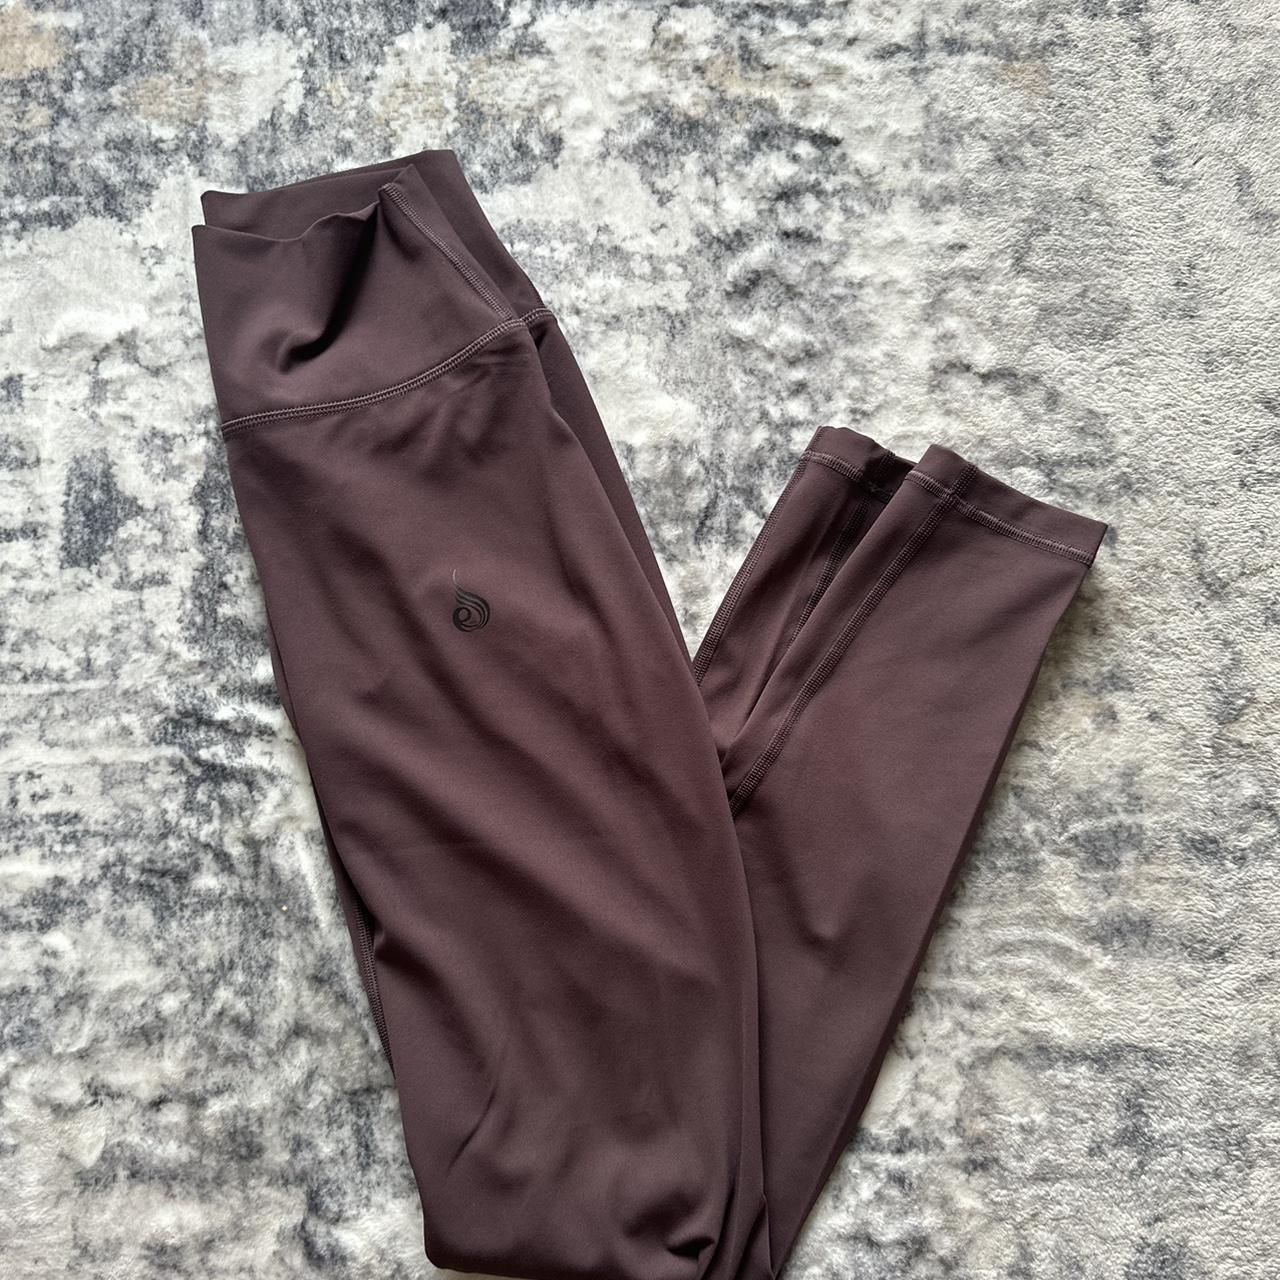 Echt - scrunch #leggings, size XS. Brand new and - Depop